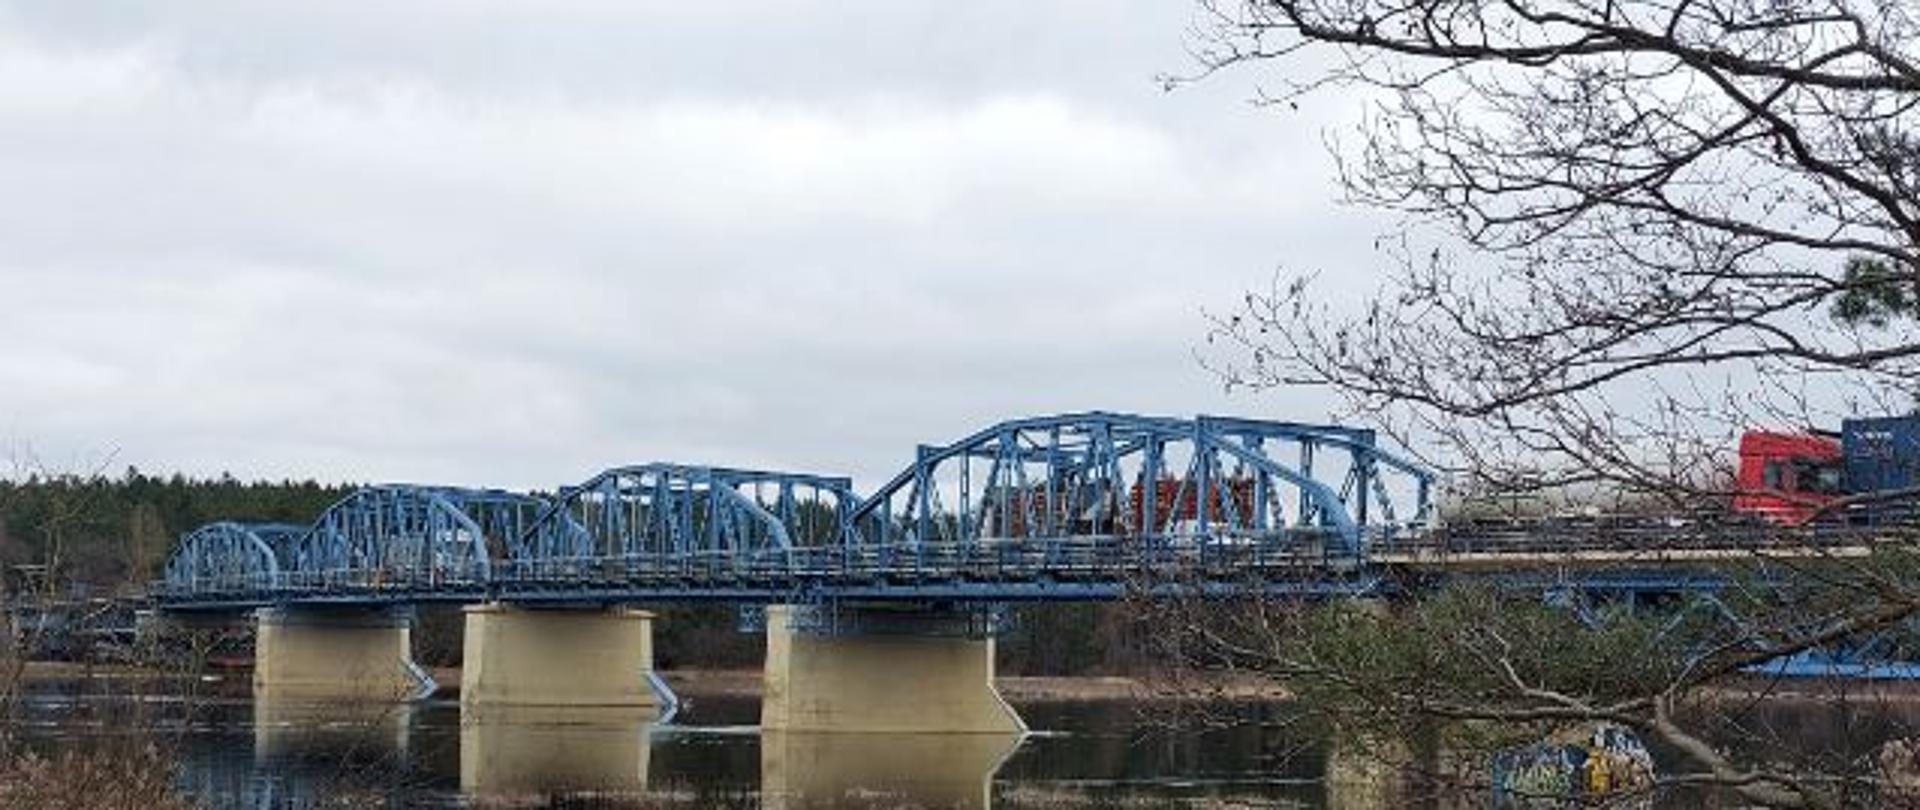 Stalowy most na betonowych podporach widziany znad brzegu rzeki